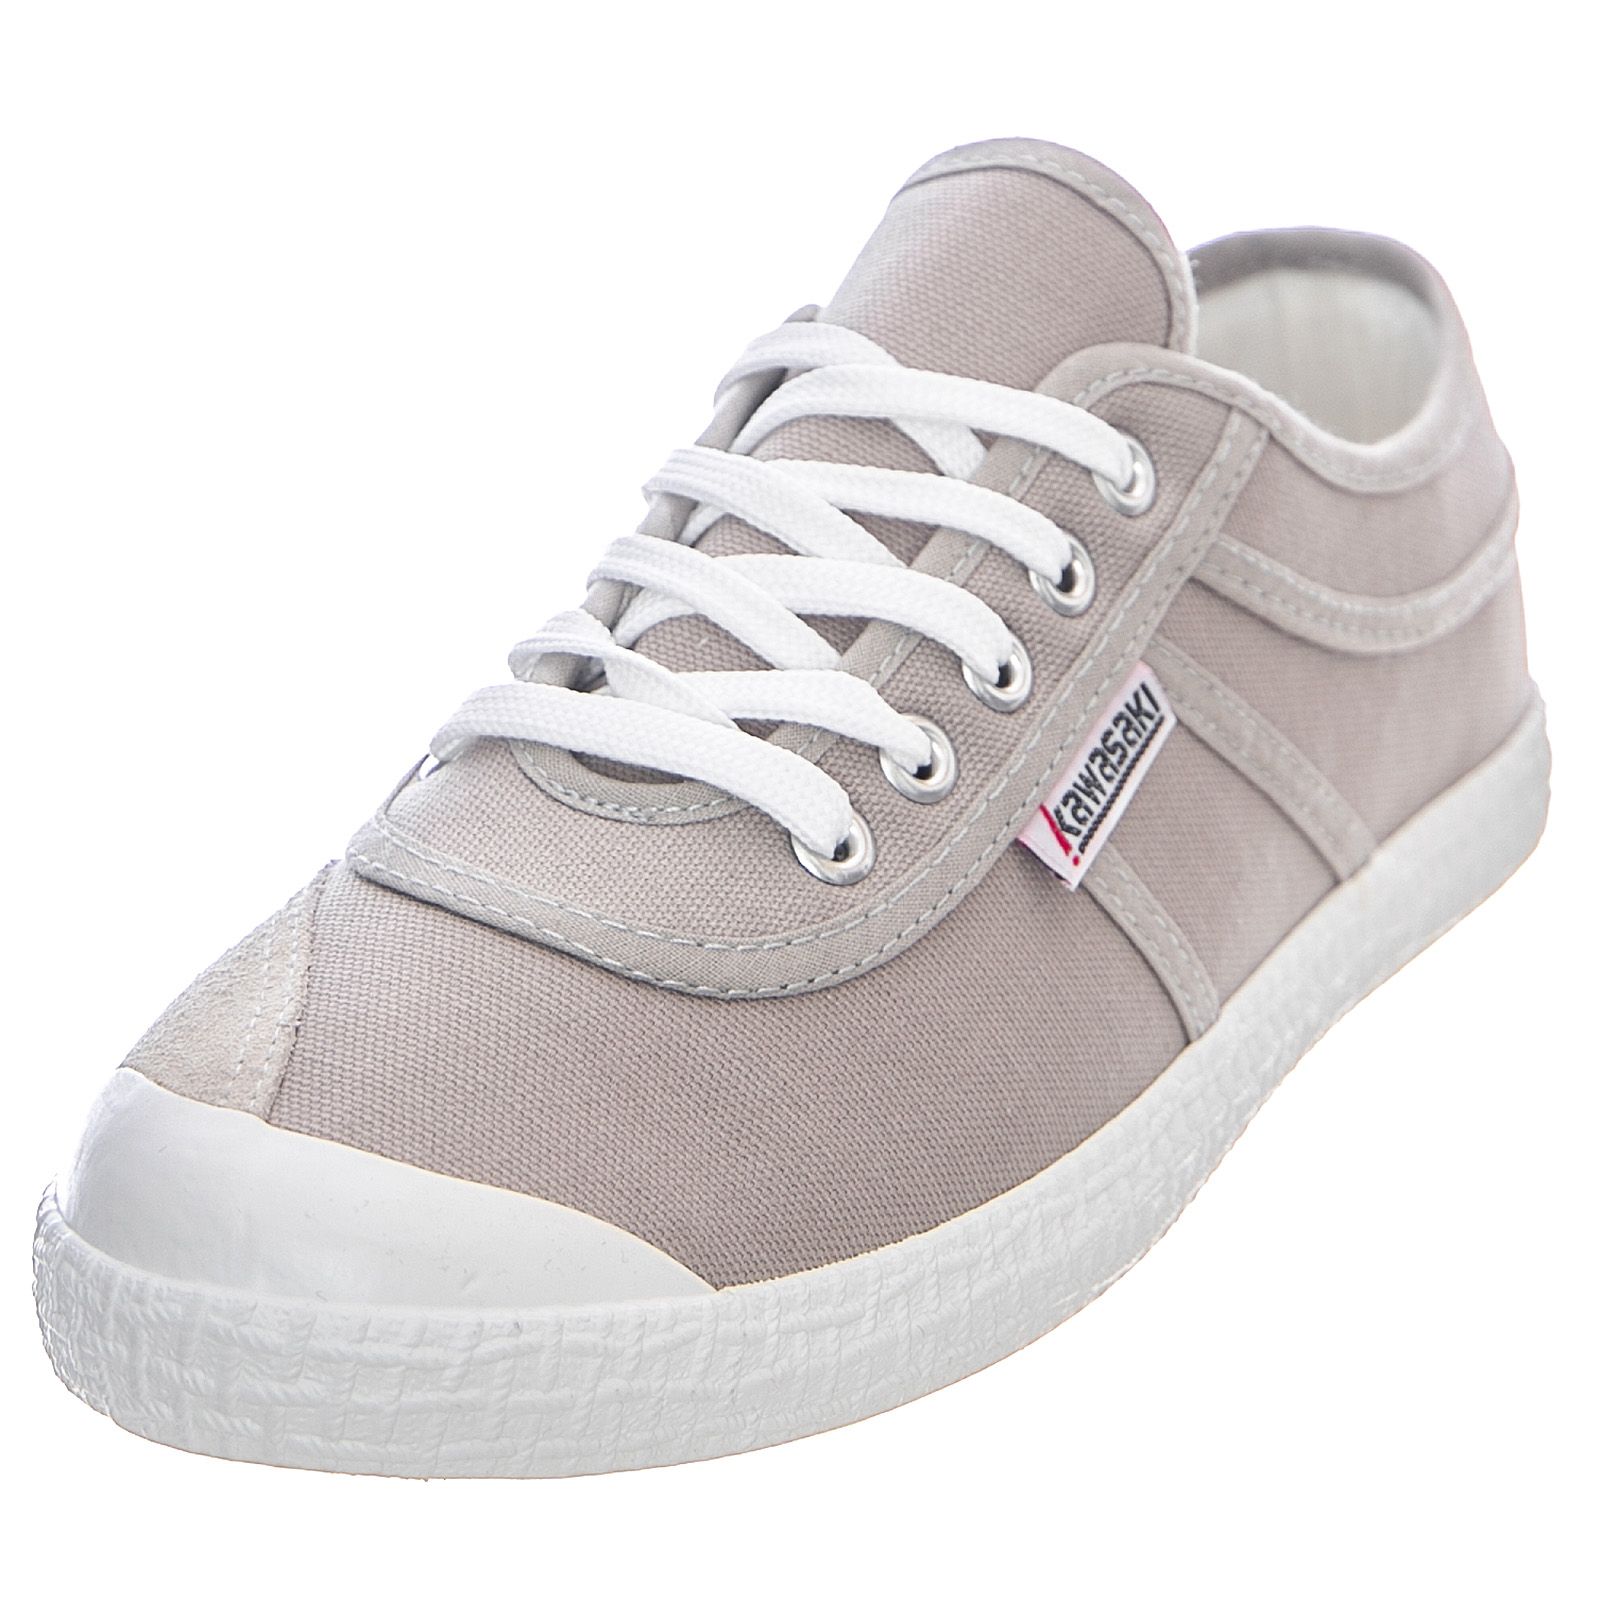 Unisex Basic Various Grey Shoes | Buy on